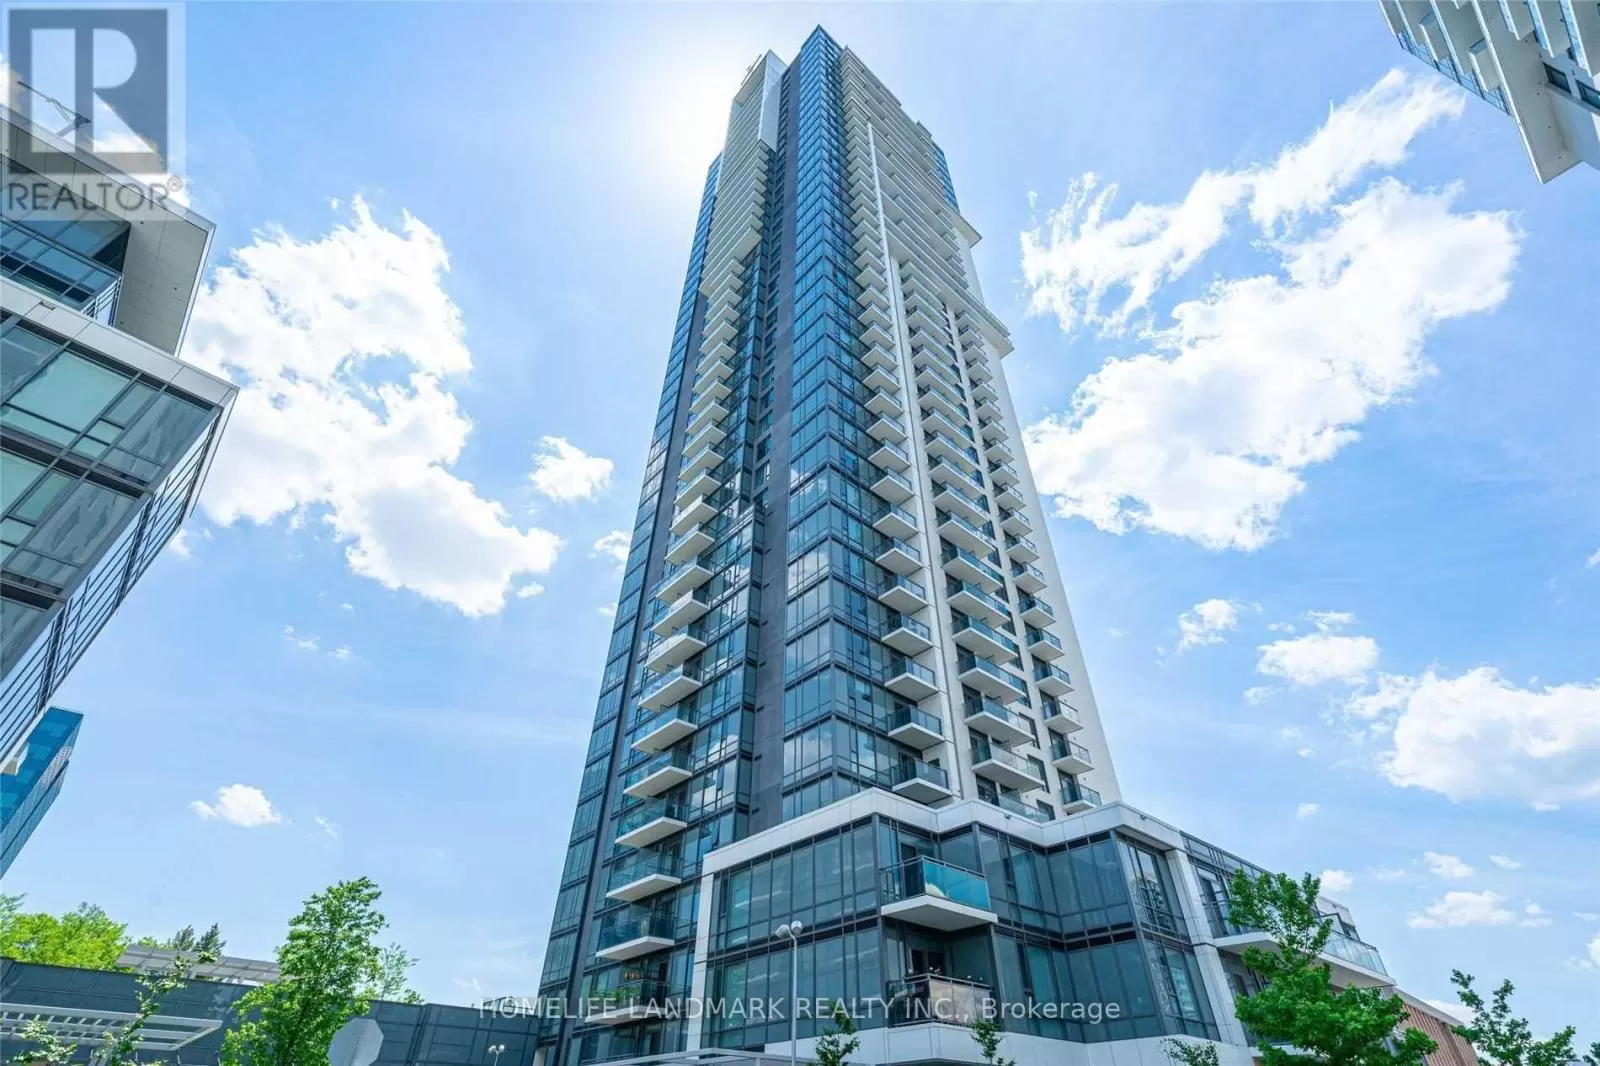 Apartment for rent: 411 - 55 Ann O'reilly Road, Toronto, Ontario M2J 0E1